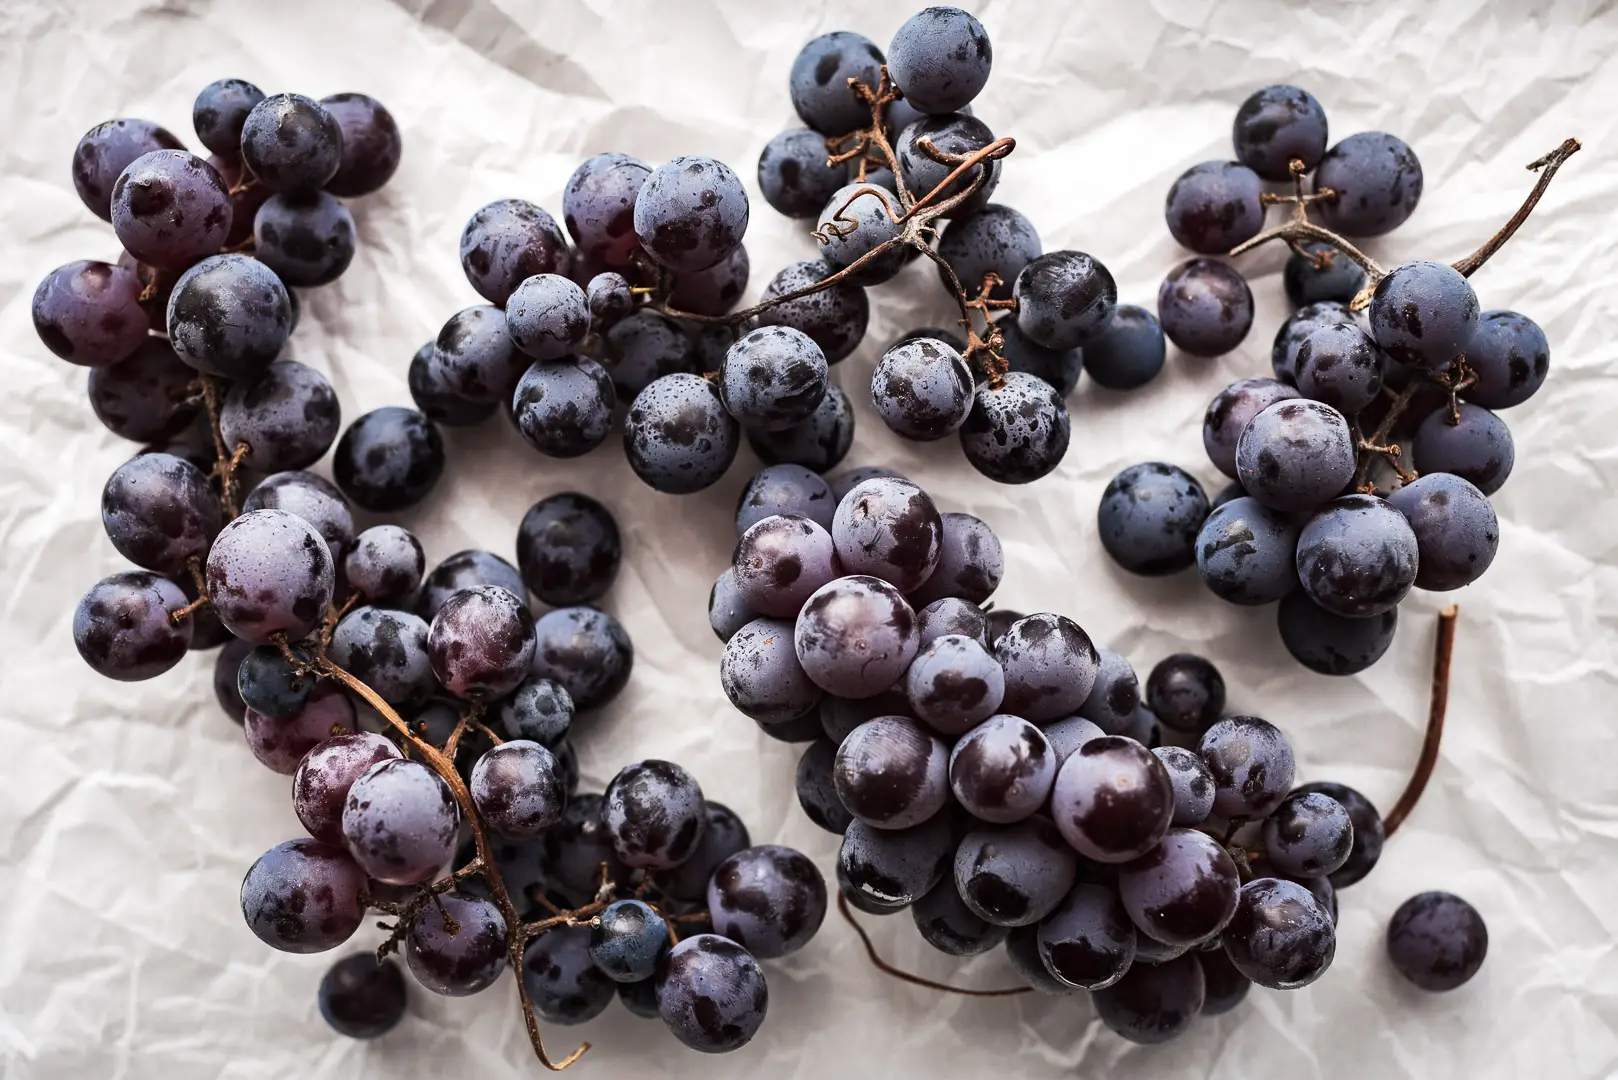 thomcord grapes